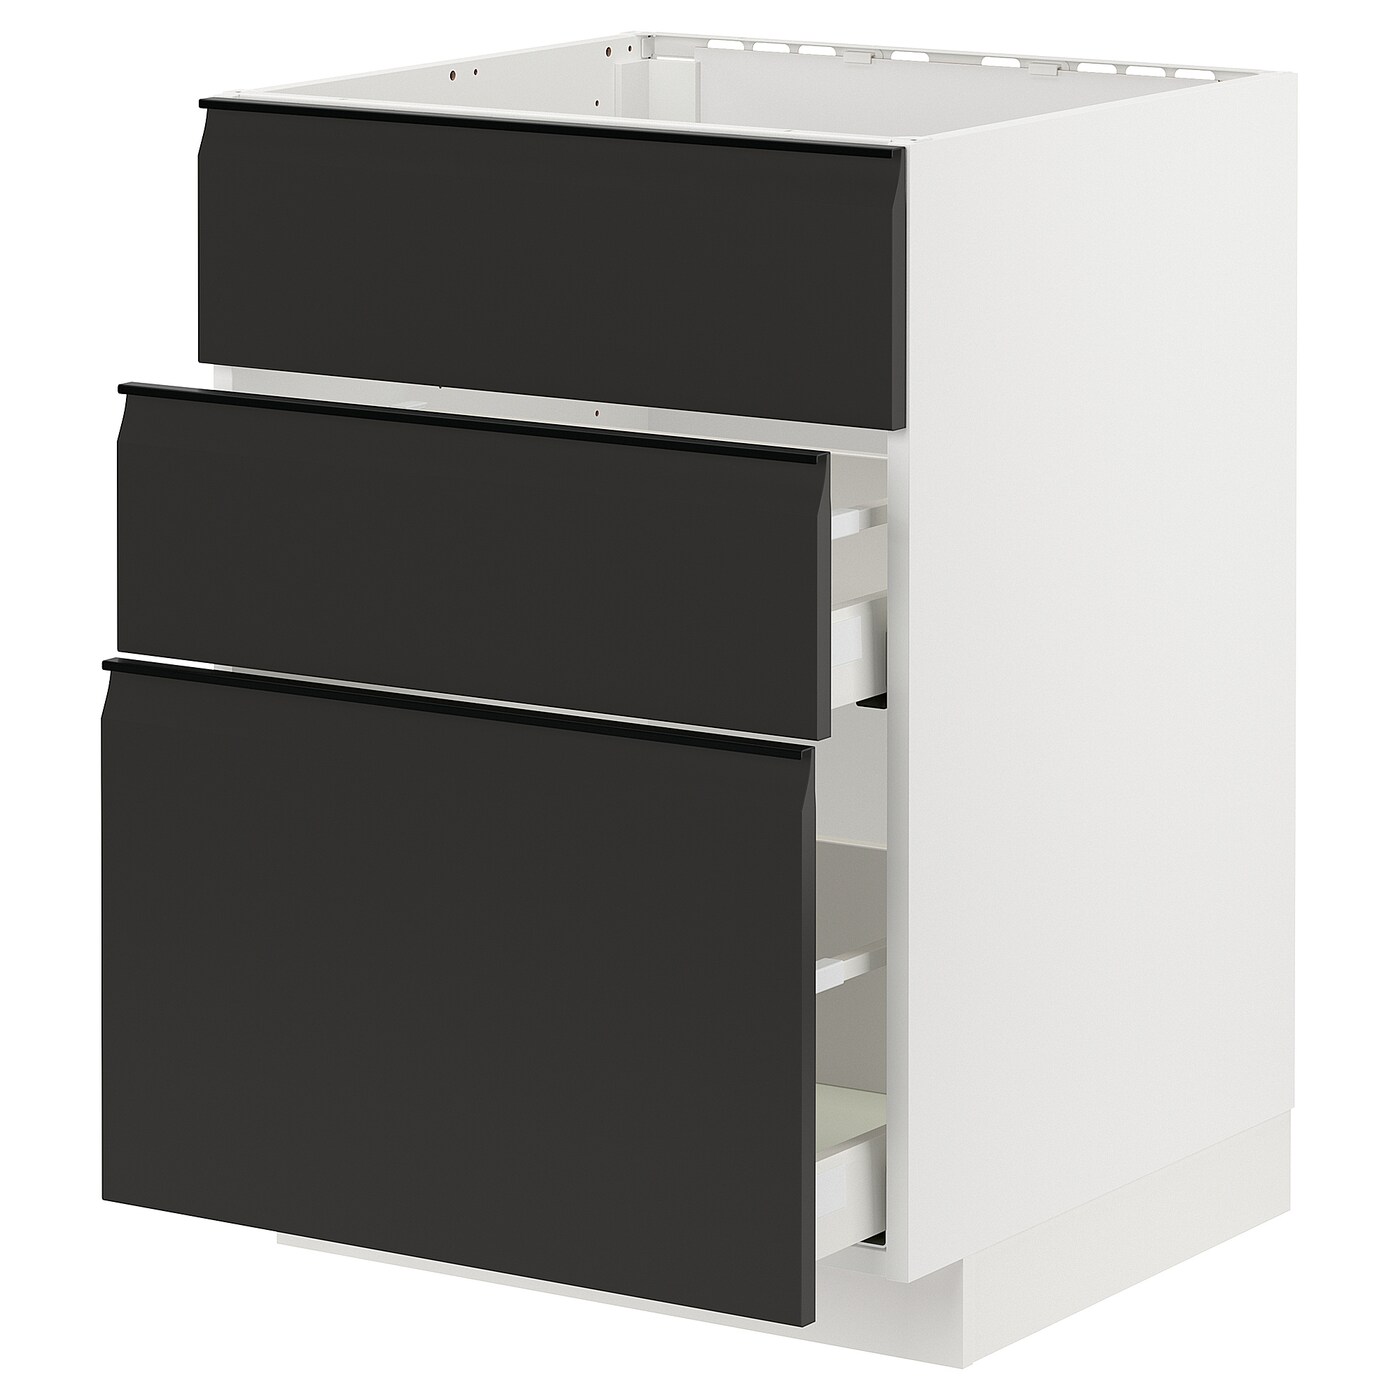 Напольный шкаф - IKEA METOD MAXIMERA, 80x62x60см, белый/черный, МЕТОД МАКСИМЕРА ИКЕА